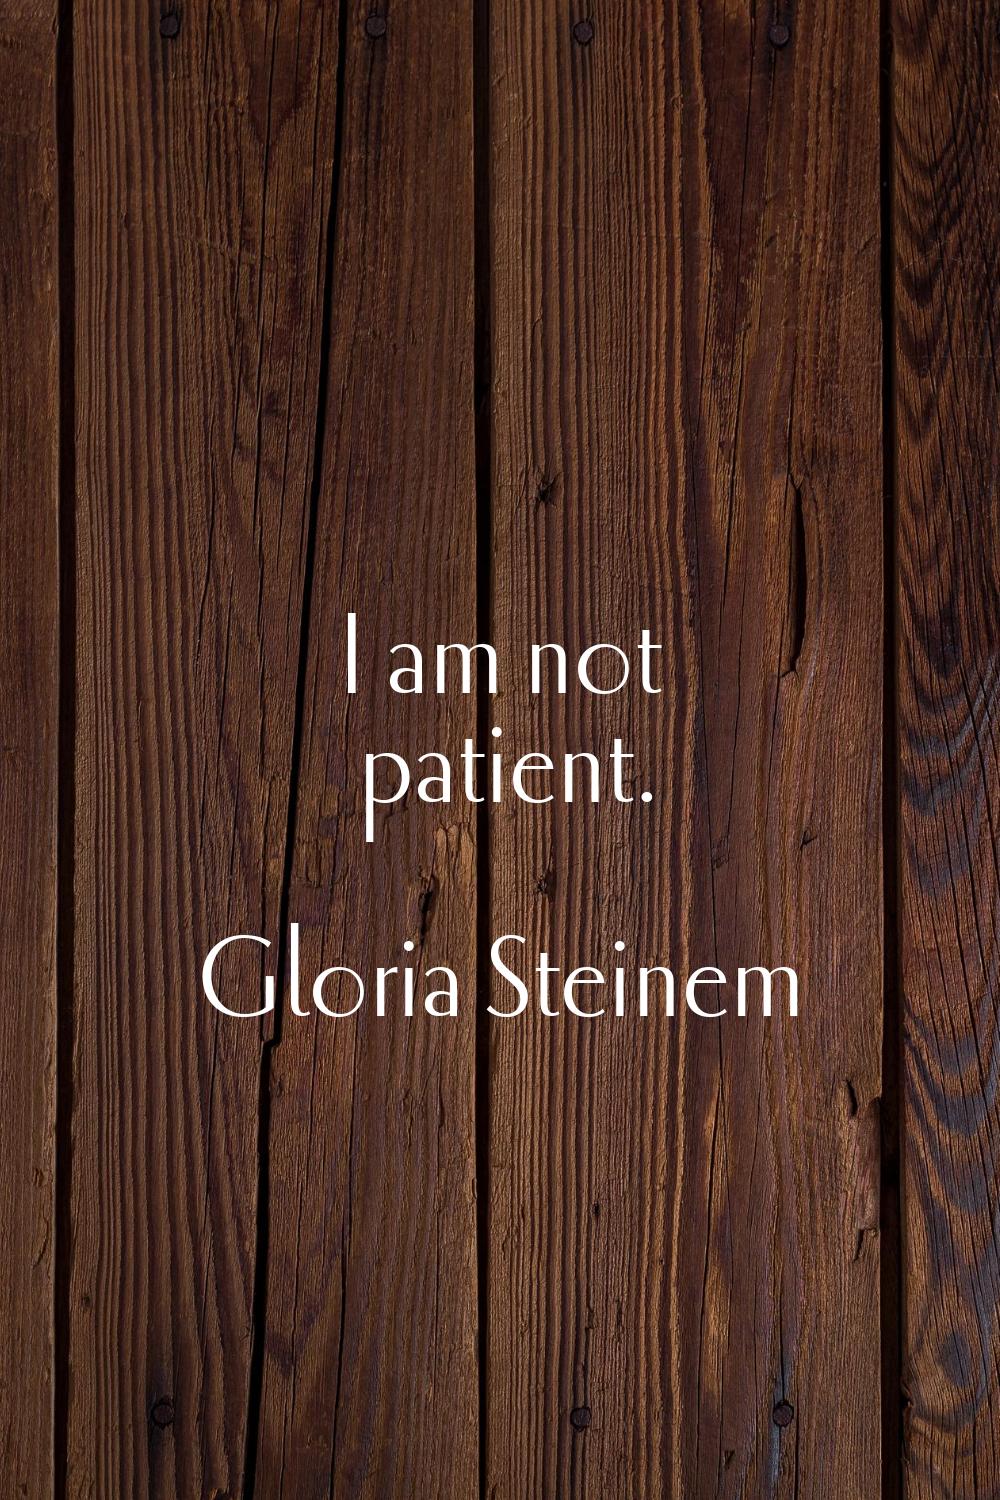 I am not patient.